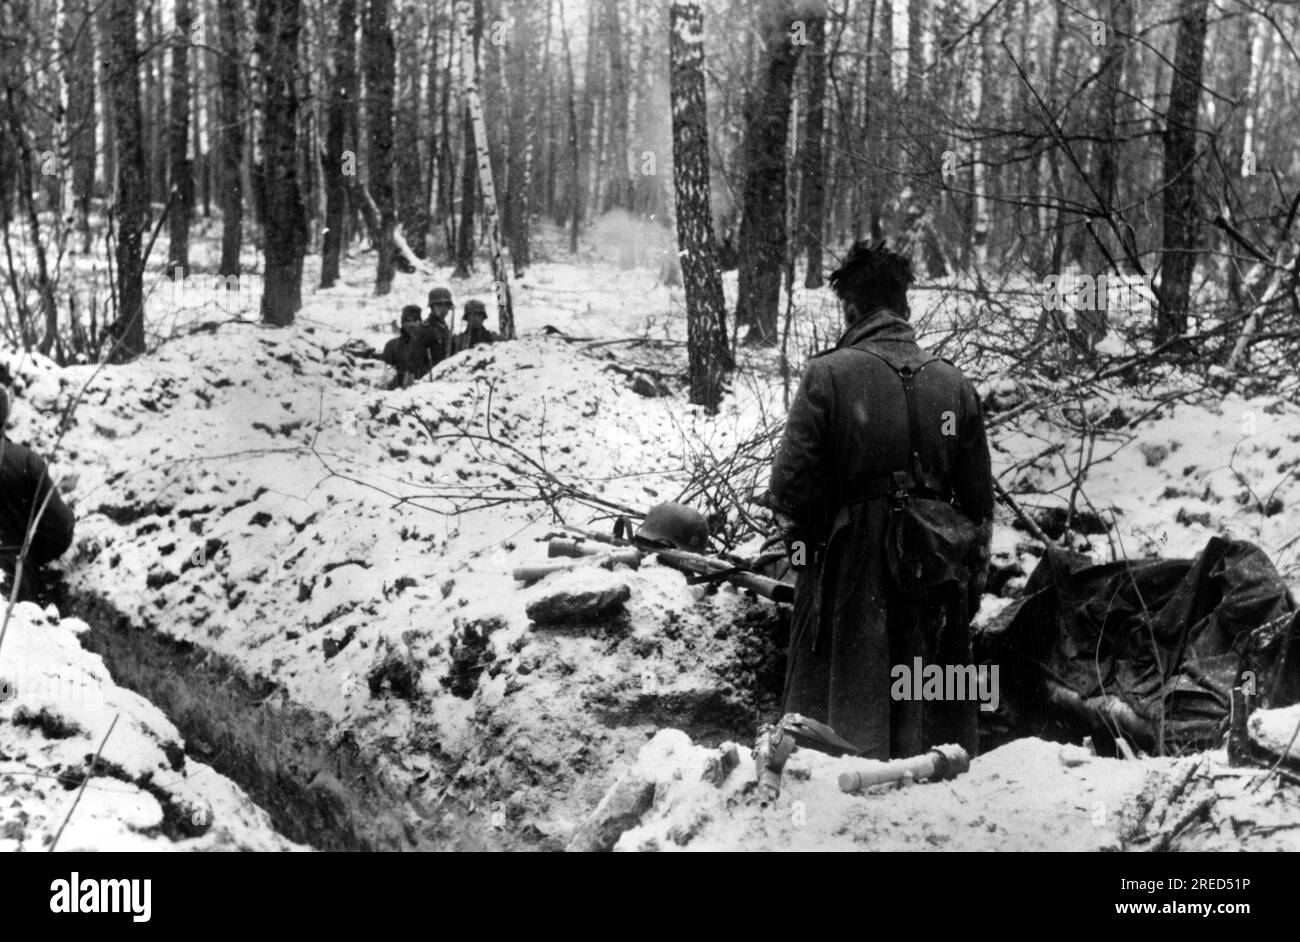 Deutsche Soldaten in provisorischer Position in einem bewaldeten Gebiet, wahrscheinlich in der Mitte der Ostfront. Foto: Cusian. [Maschinelle Übersetzung] Stockfoto